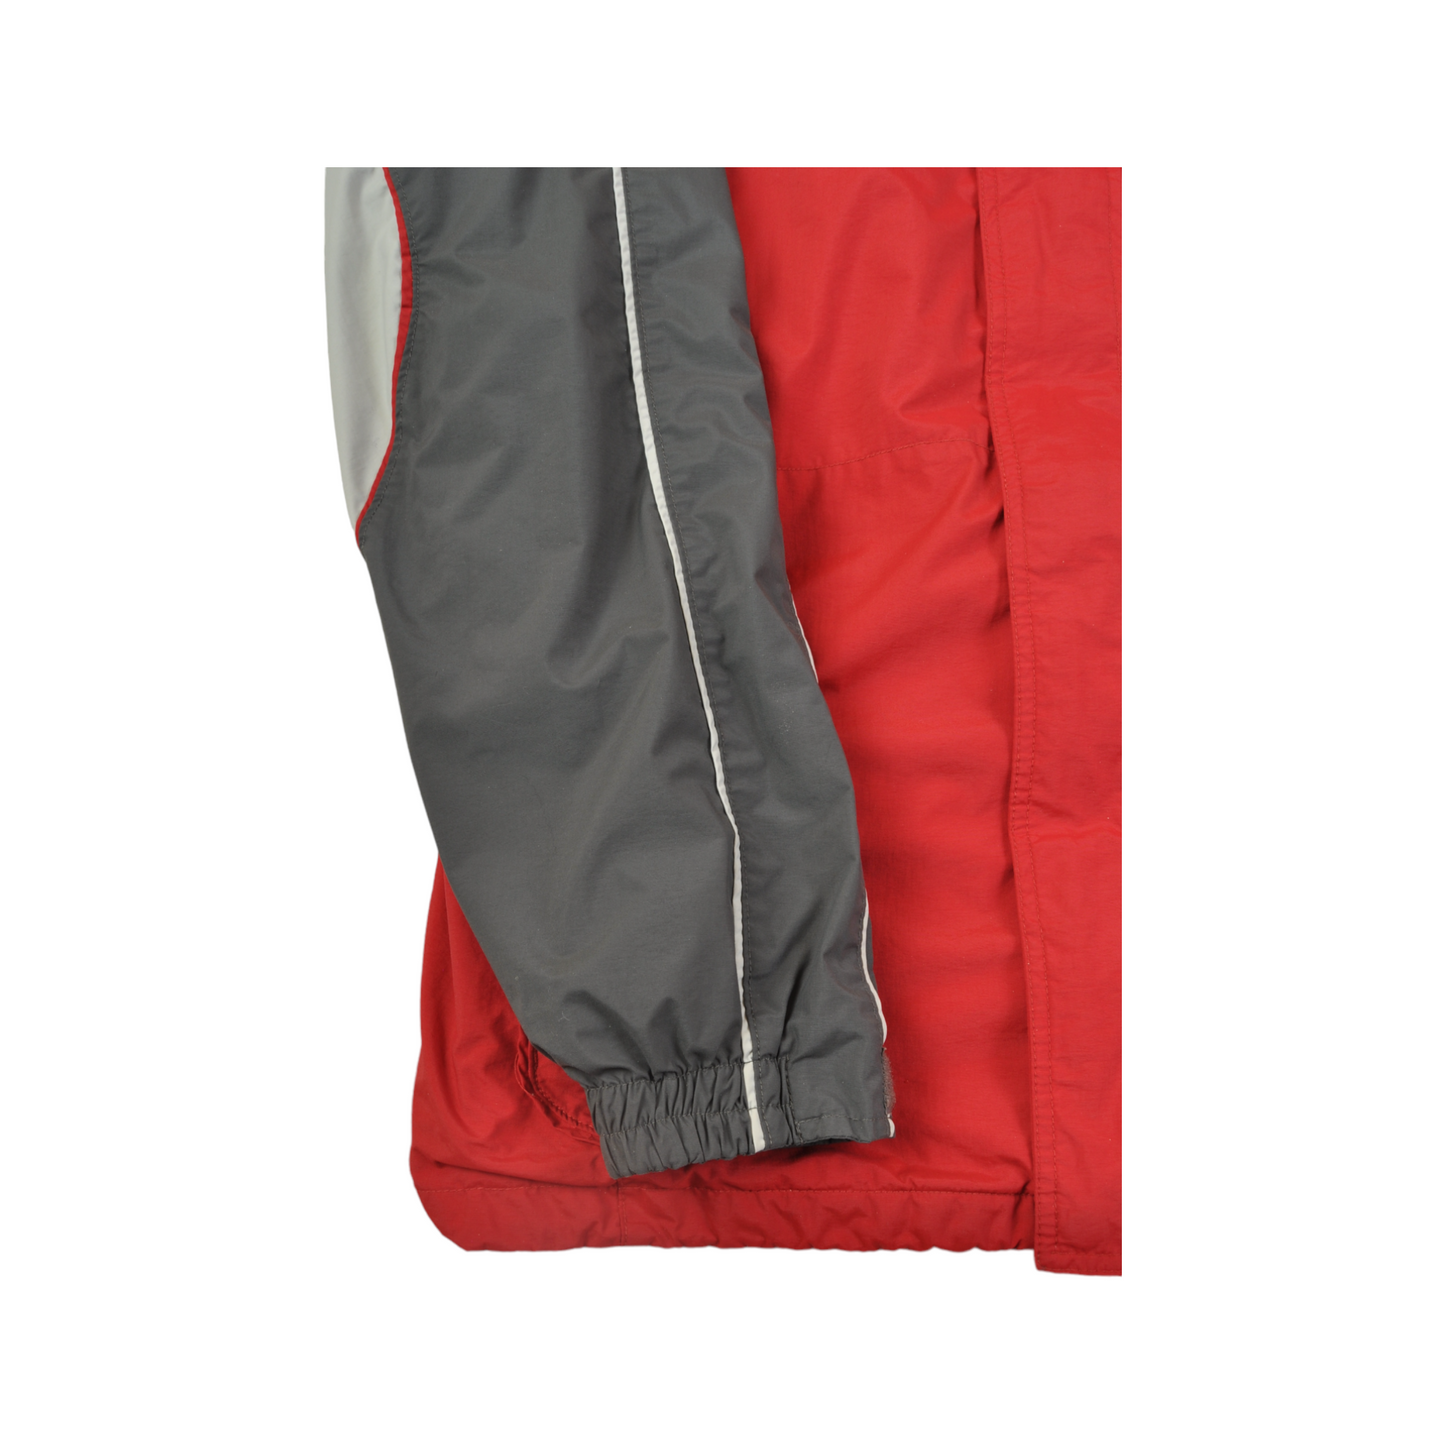 Vintage Columbia  Jacket Waterproof Red/Grey Large